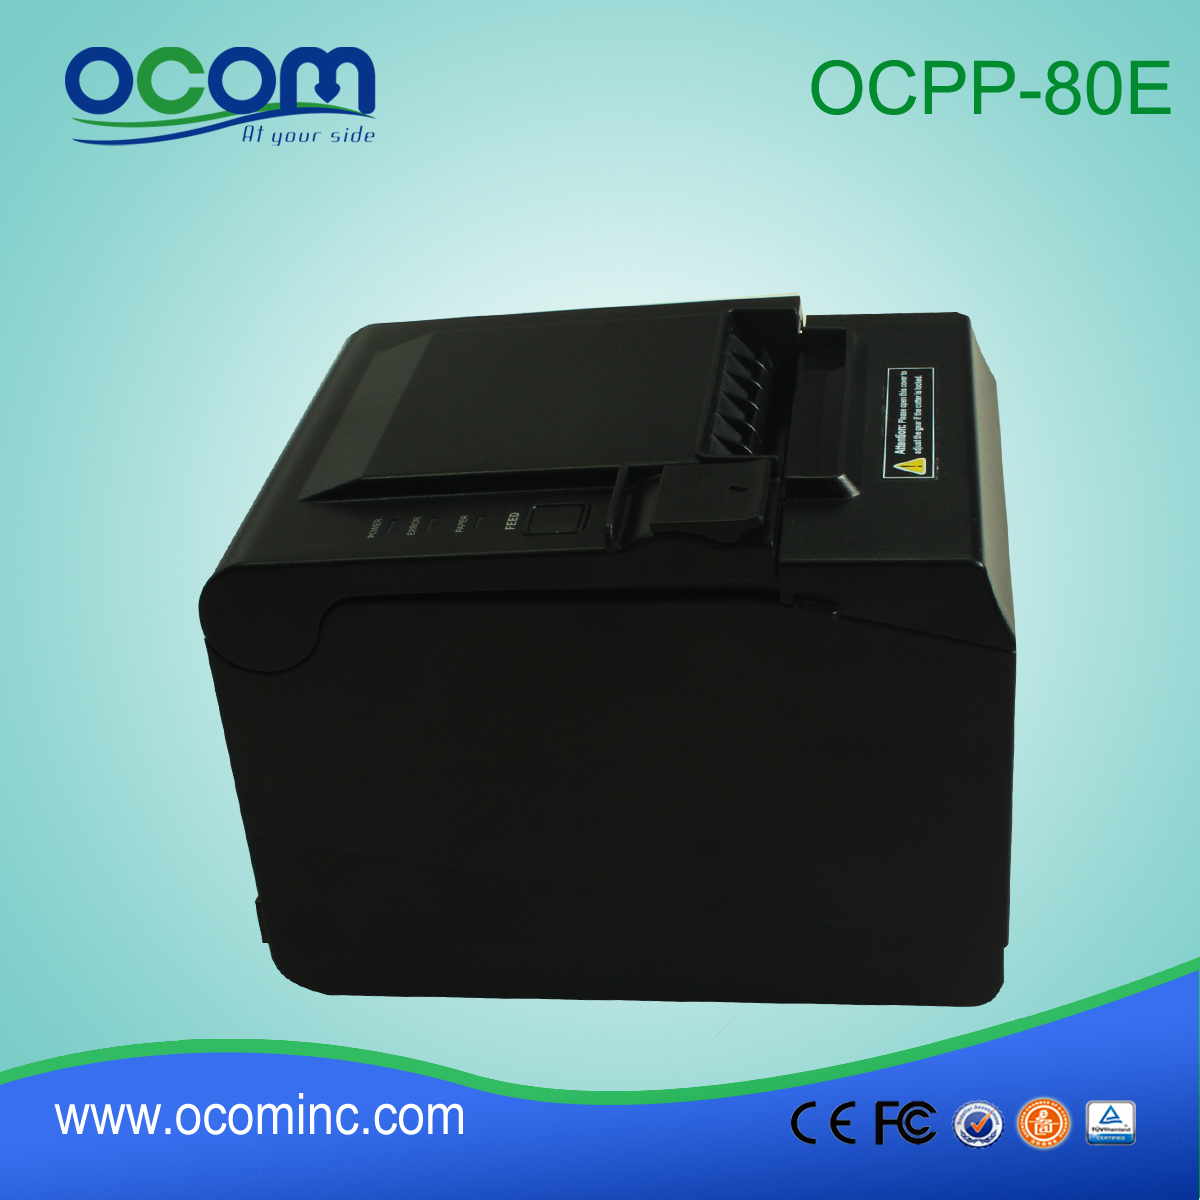 Быстрая скорость супермаркет принтер с автоматическим резаком (OCPP-80E)